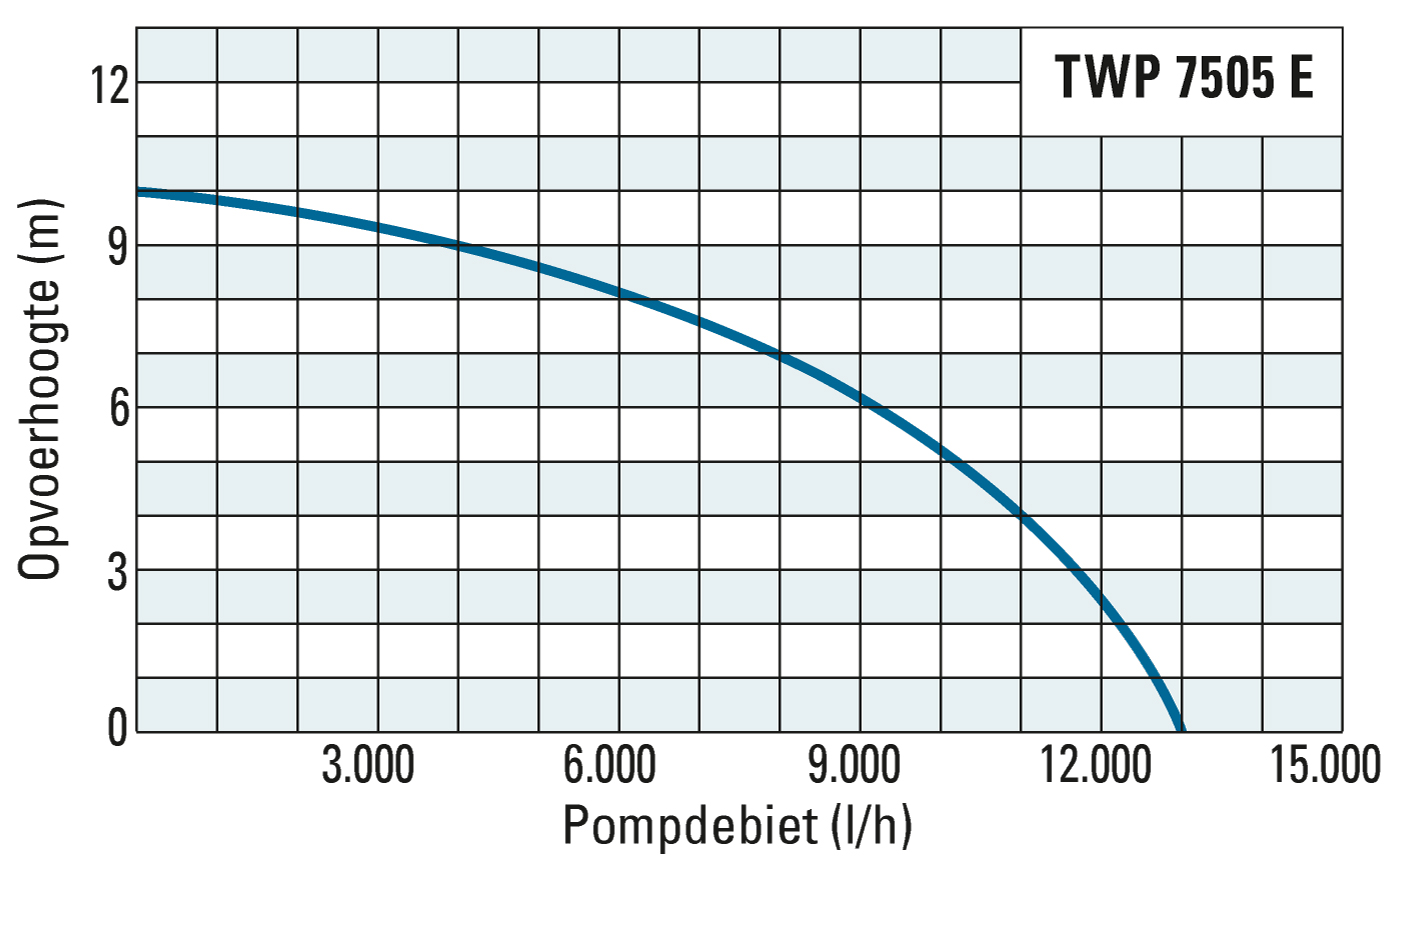 Opvoerhoogte en pompdebiet van de TWP 7505 E